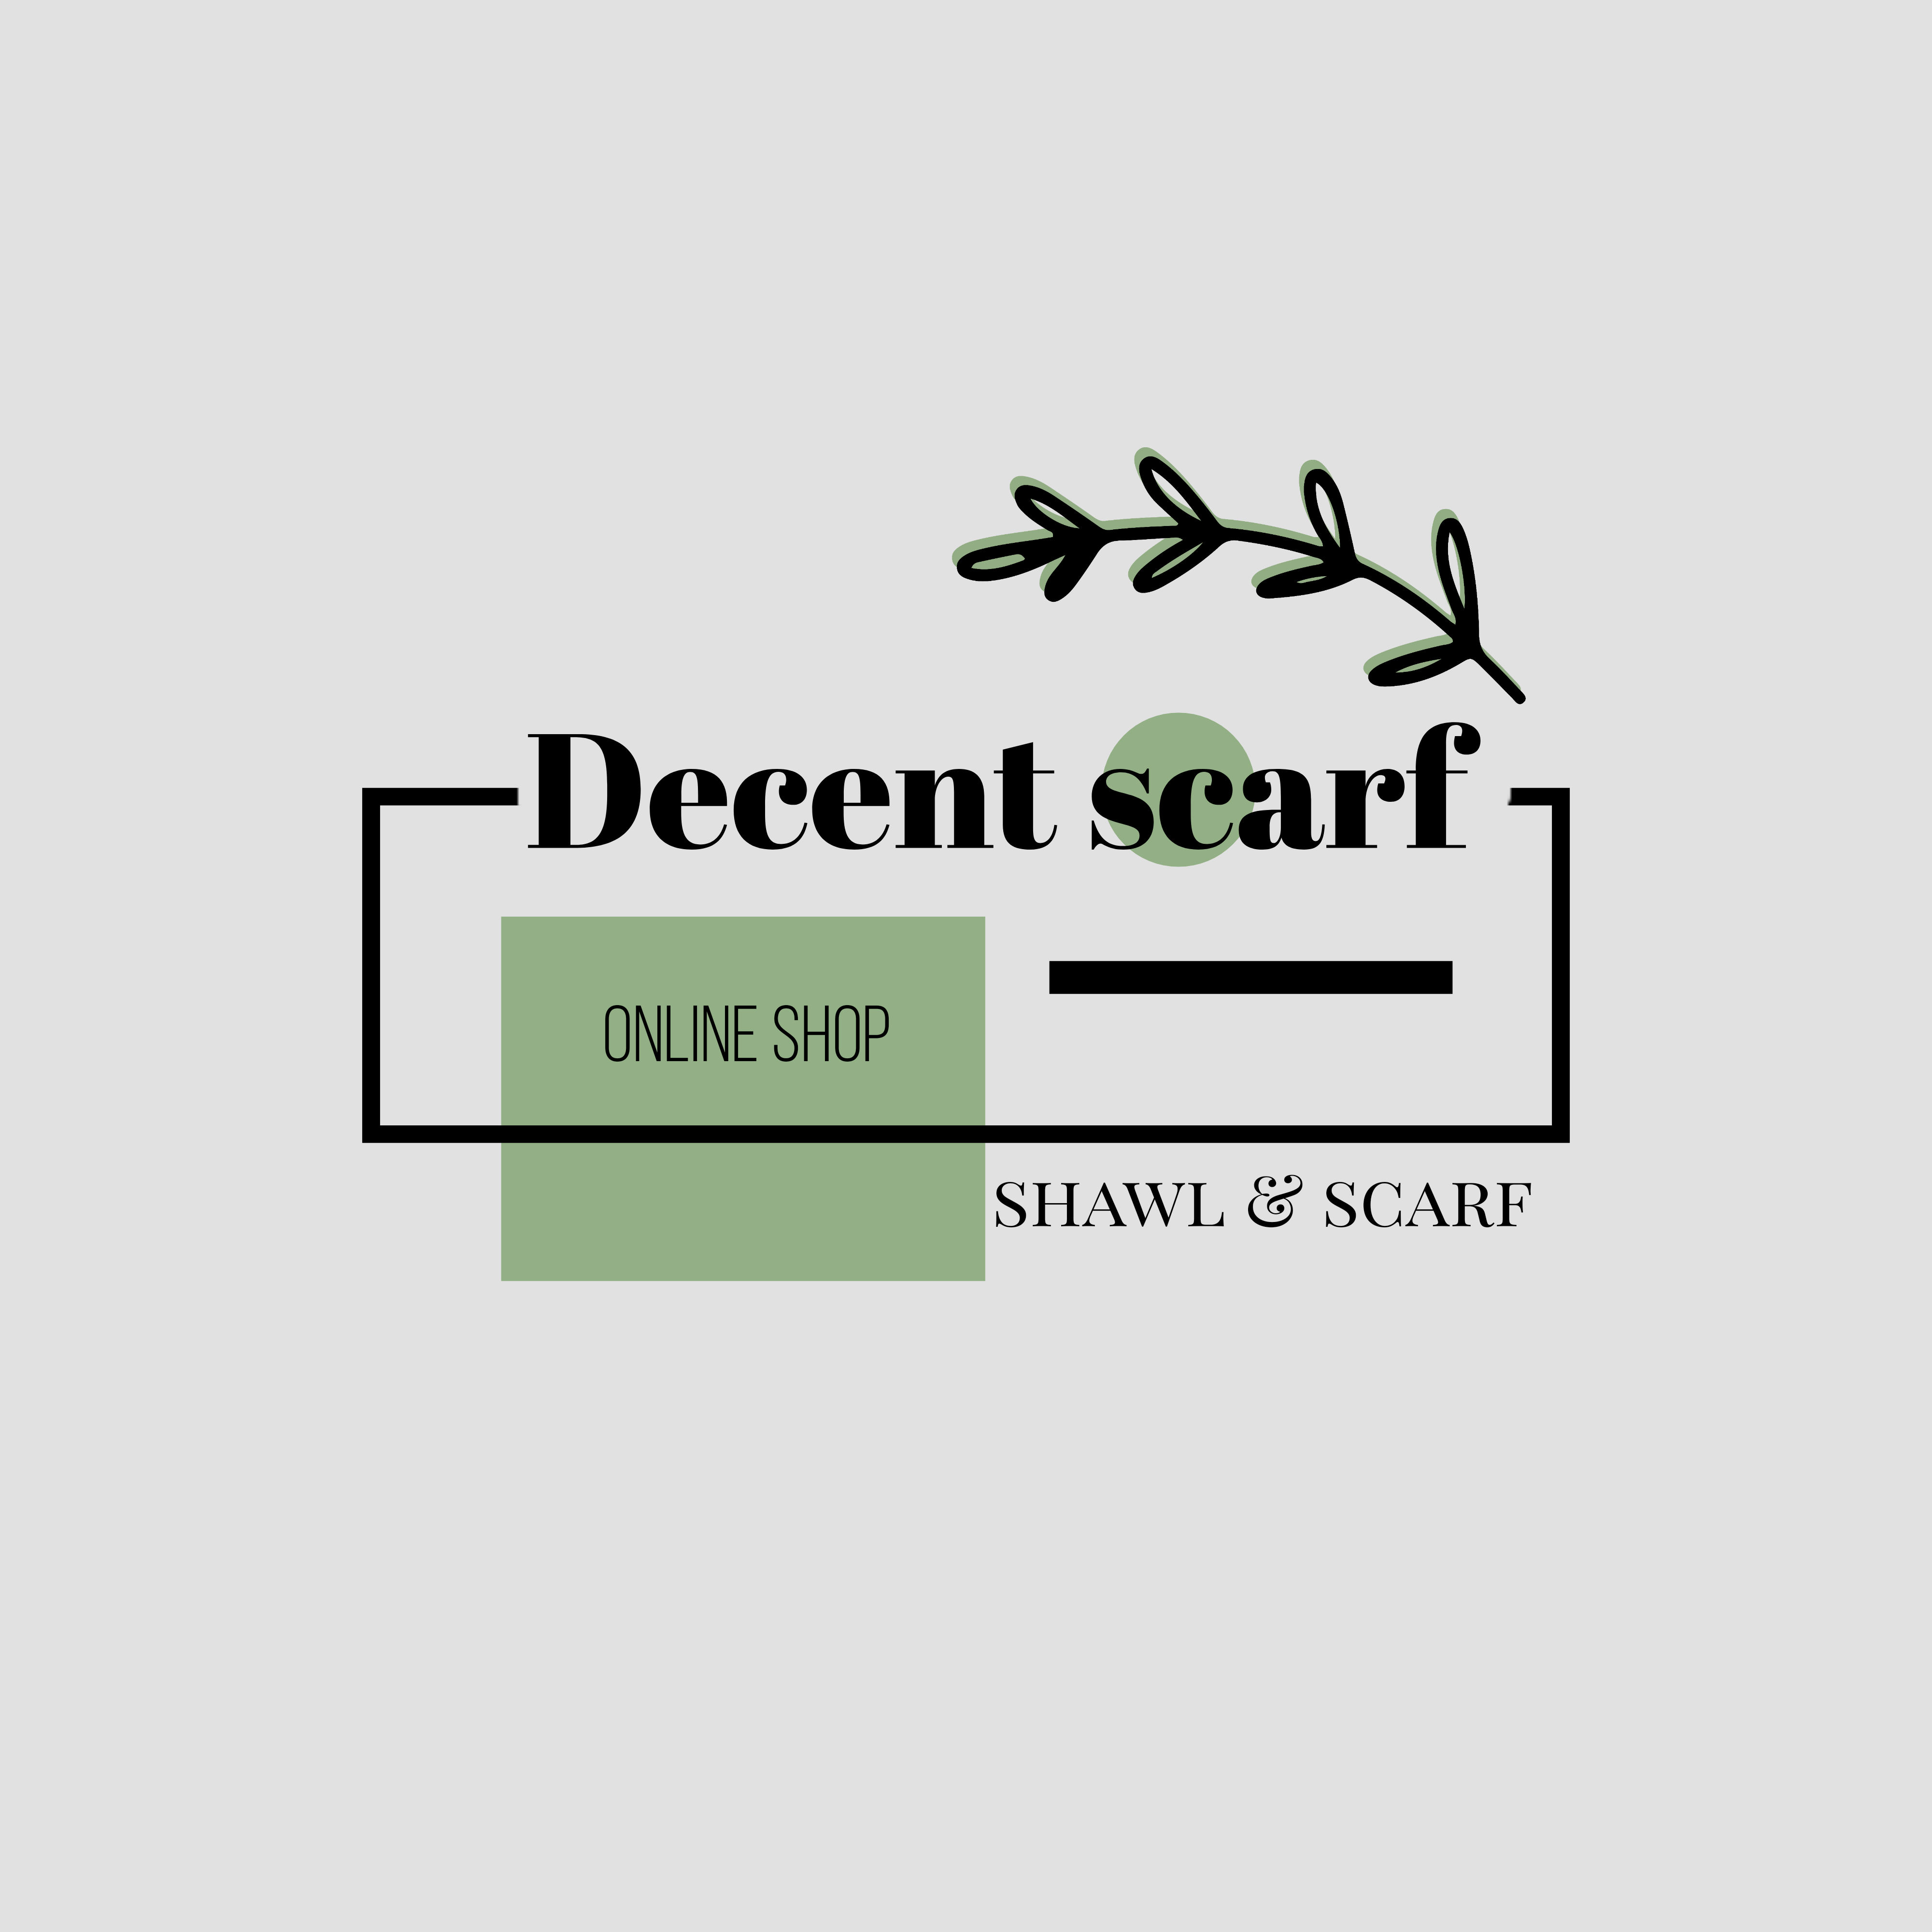   Decentscarf onlineshop